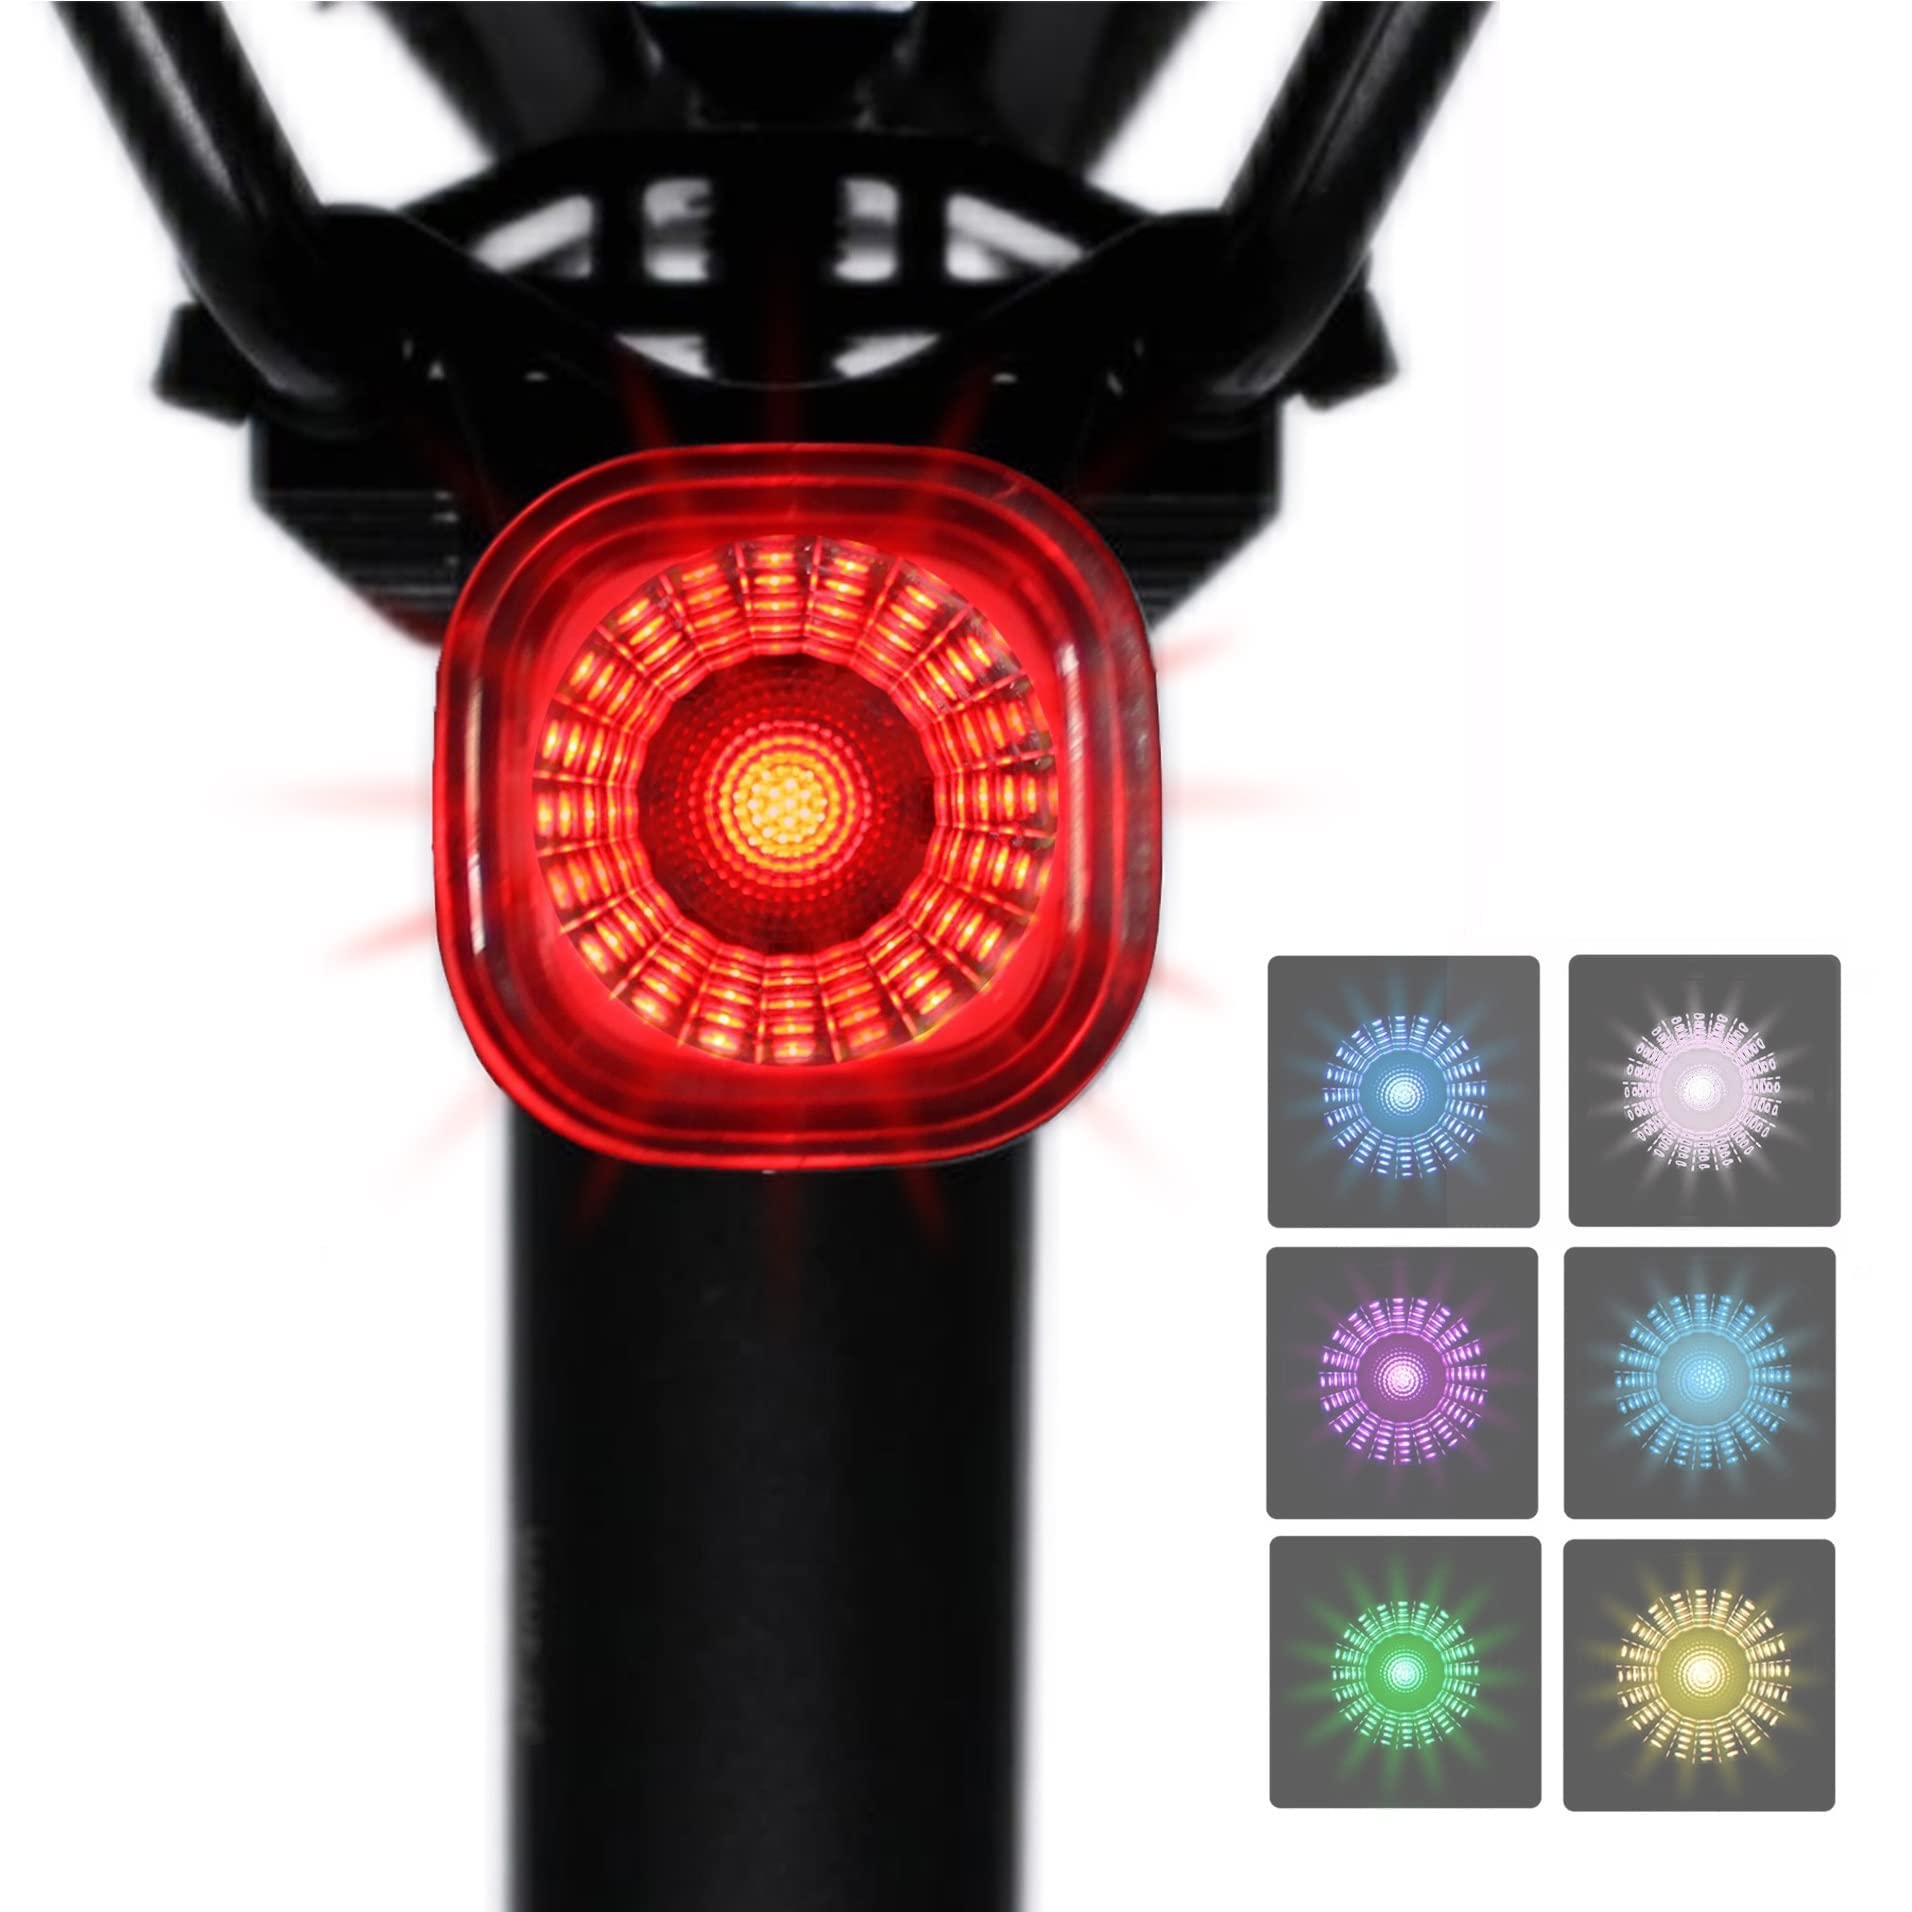 Gelielim テールライト 自転車 リアライト 自動点灯 IPX6防水 USB充電式 高輝度 長時間対応 ロードバイクリアライト 夜間走行 簡単装着 (5種類)